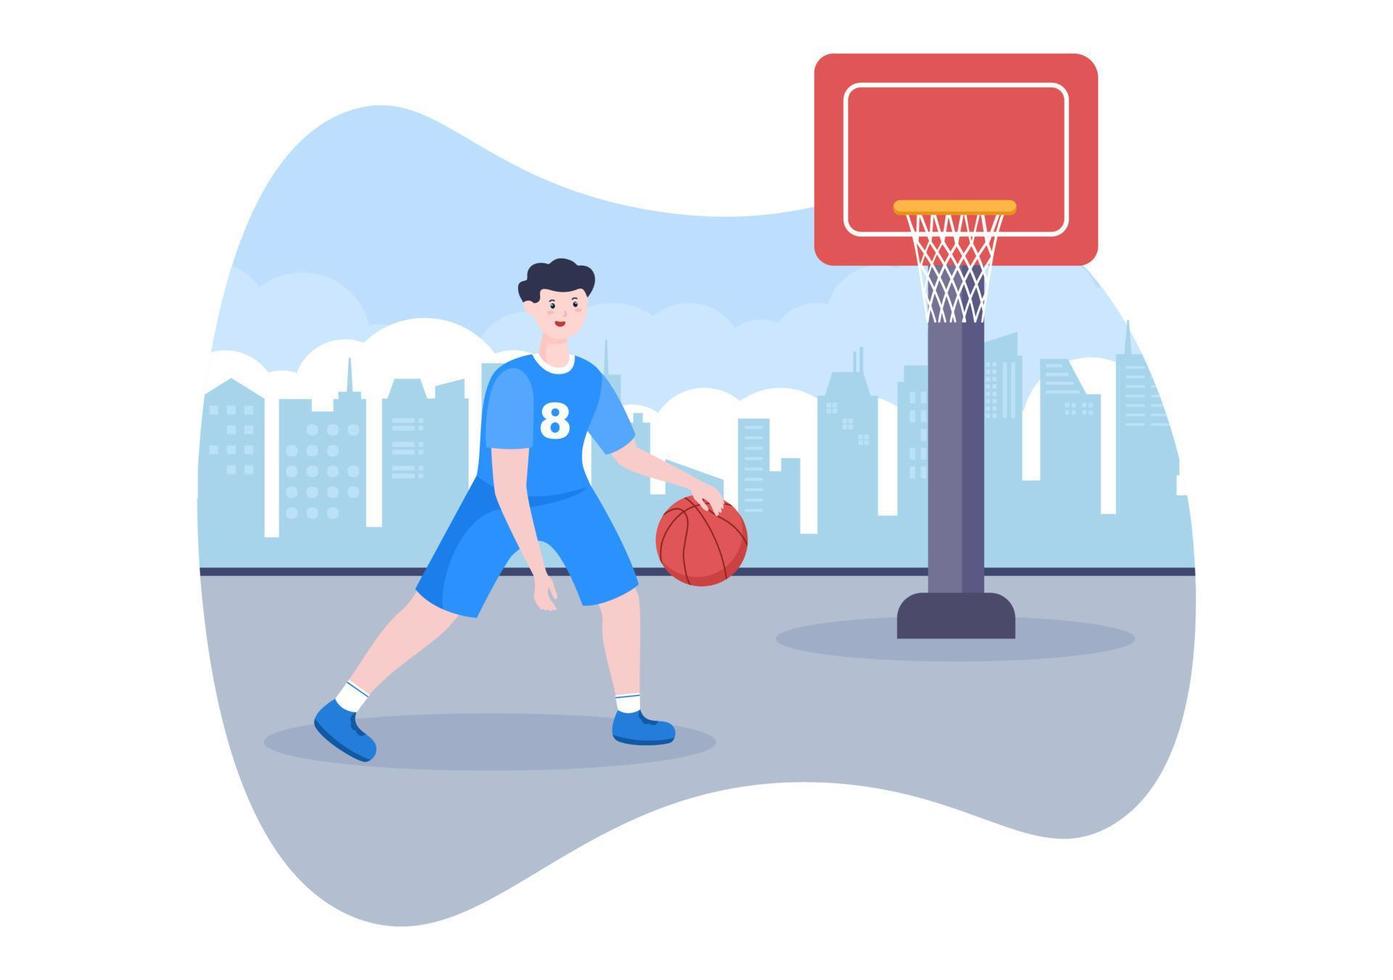 heureux jeune homme jouant au basket-ball illustration design plat portant un uniforme de panier dans un tribunal extérieur pour le fond, l'affiche ou la bannière vecteur